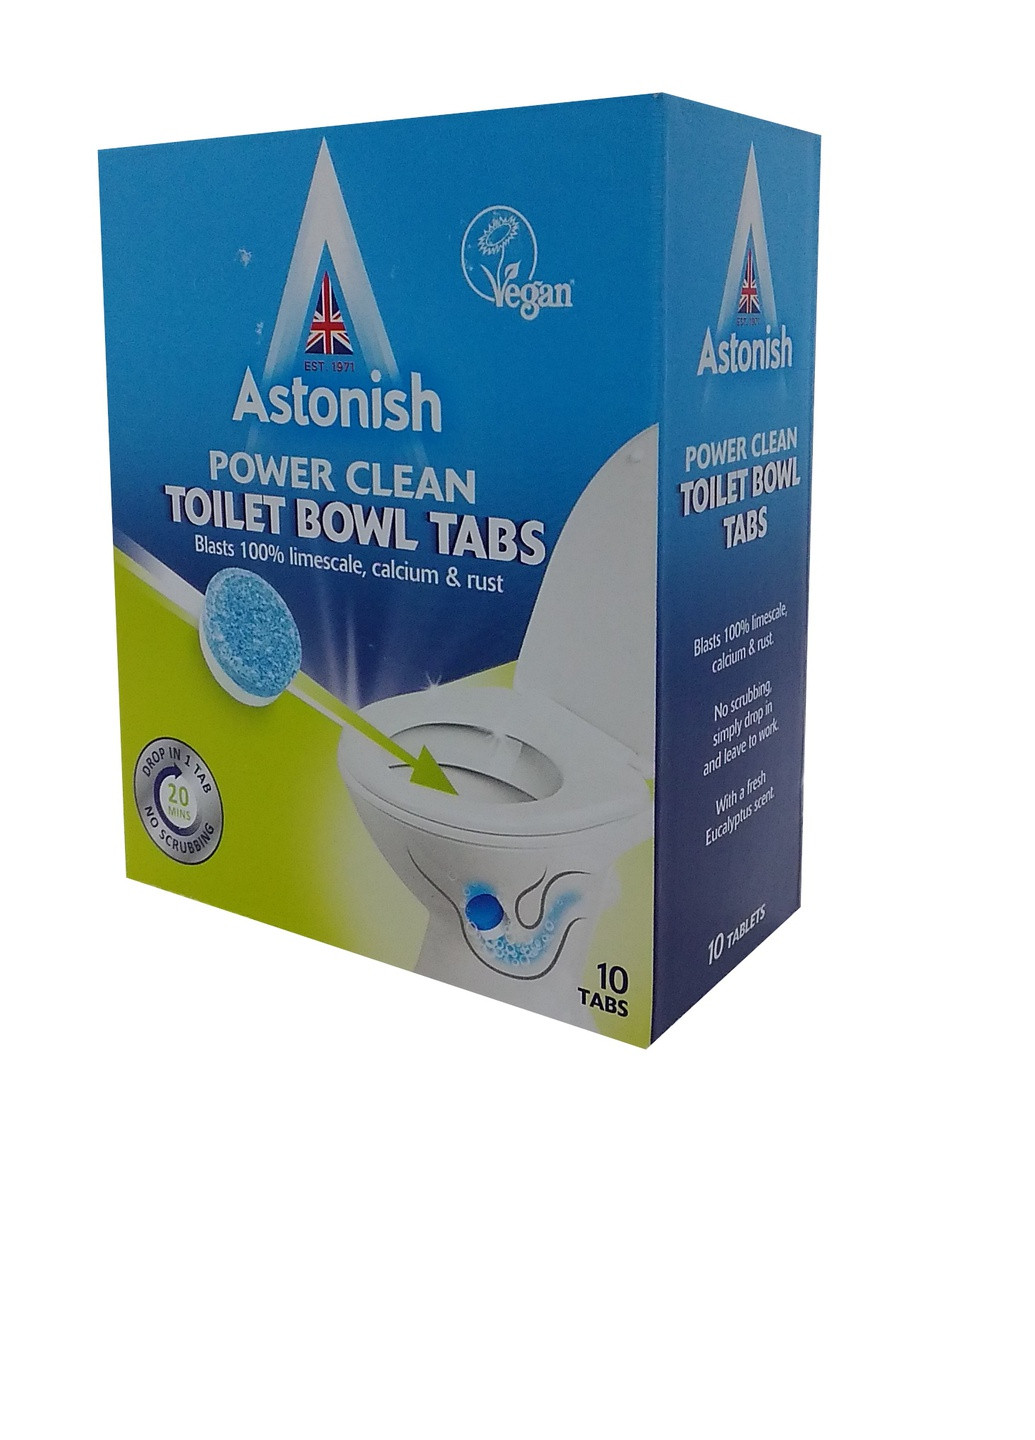 Таблетки для мытья унитаза Toilet Bowl Tabs 10 tabs Astonish